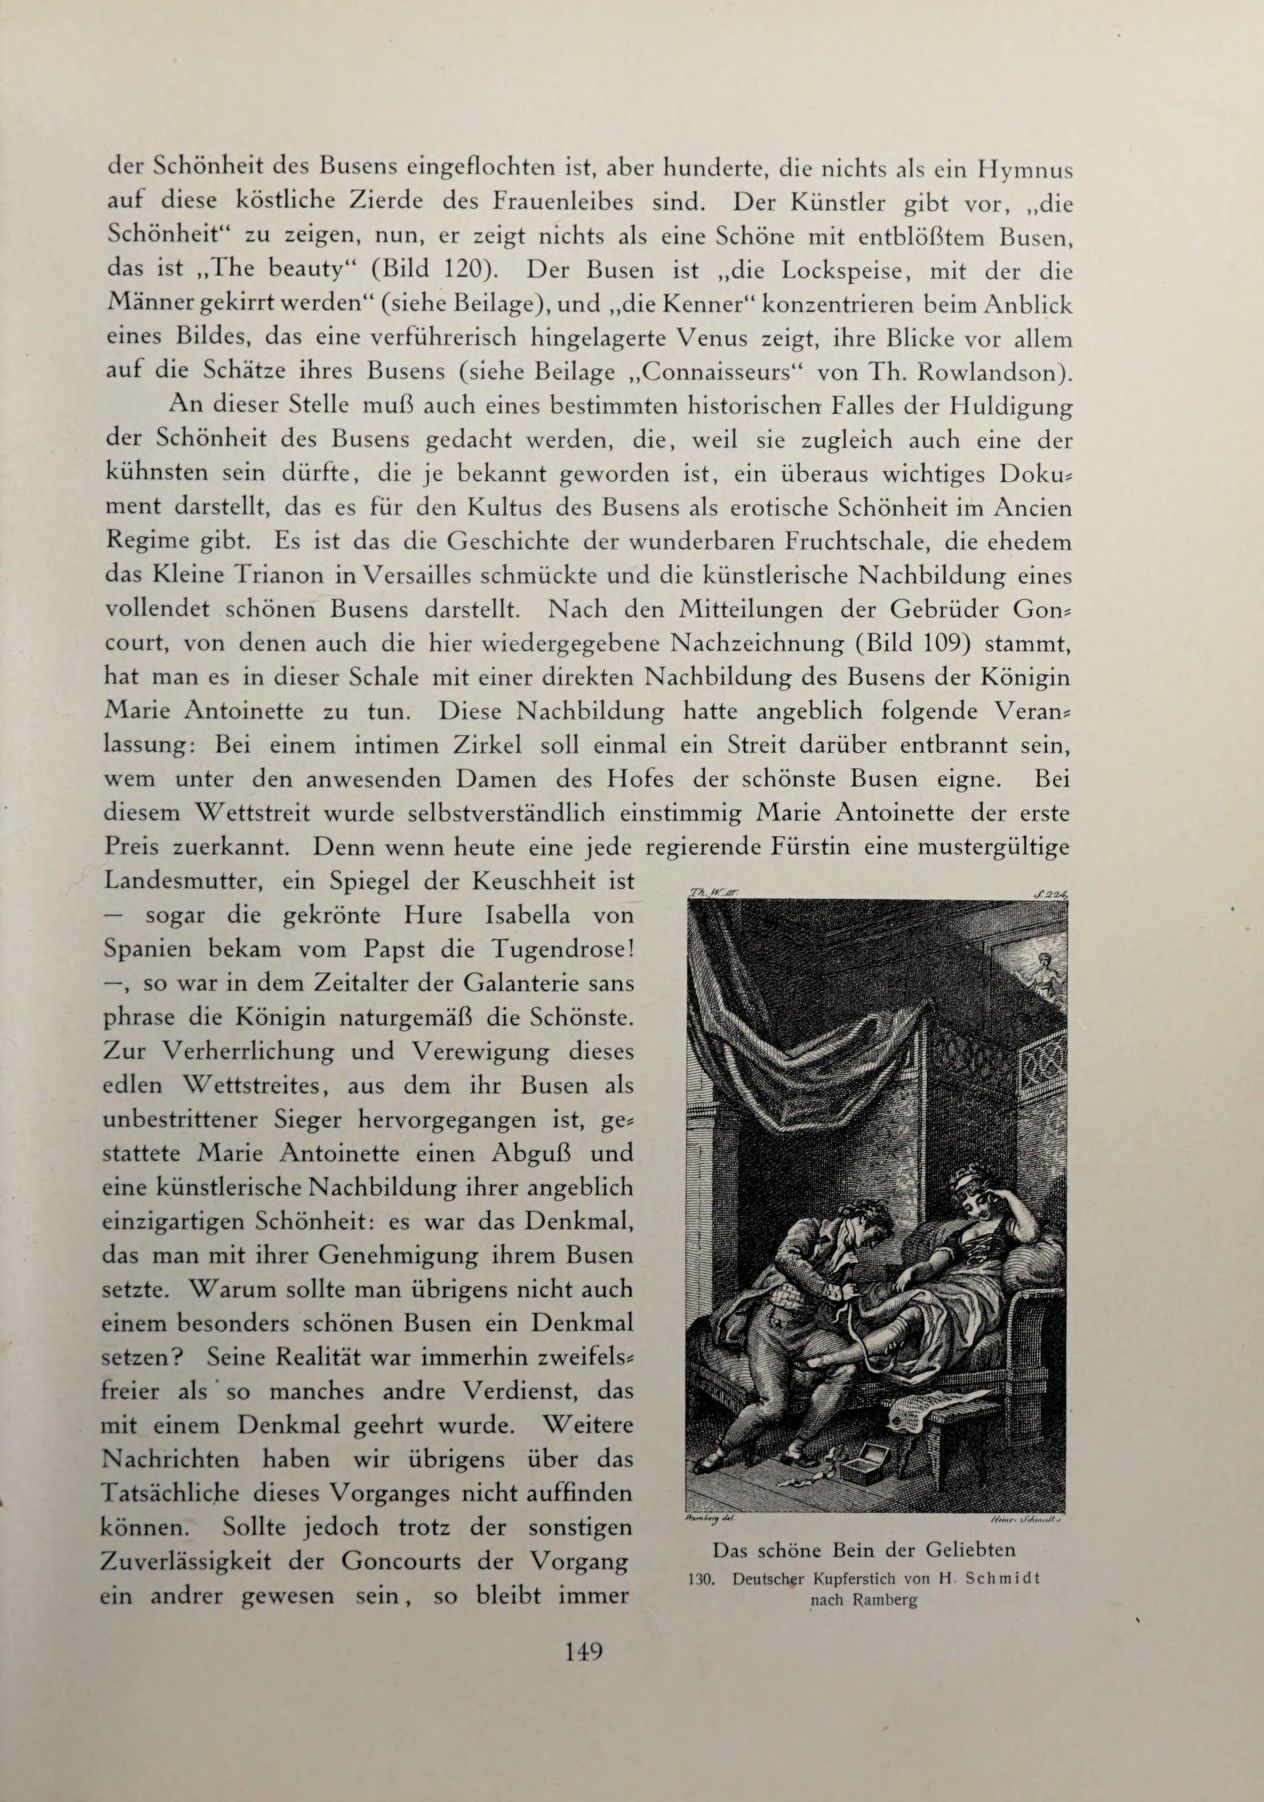 [Eduard Fuchs] Illustrierte Sittengeschichte vom Mittelalter bis zur Gegenwart: Bd. 2. and Ergänzungsband. Die galante Zeit [German] 226